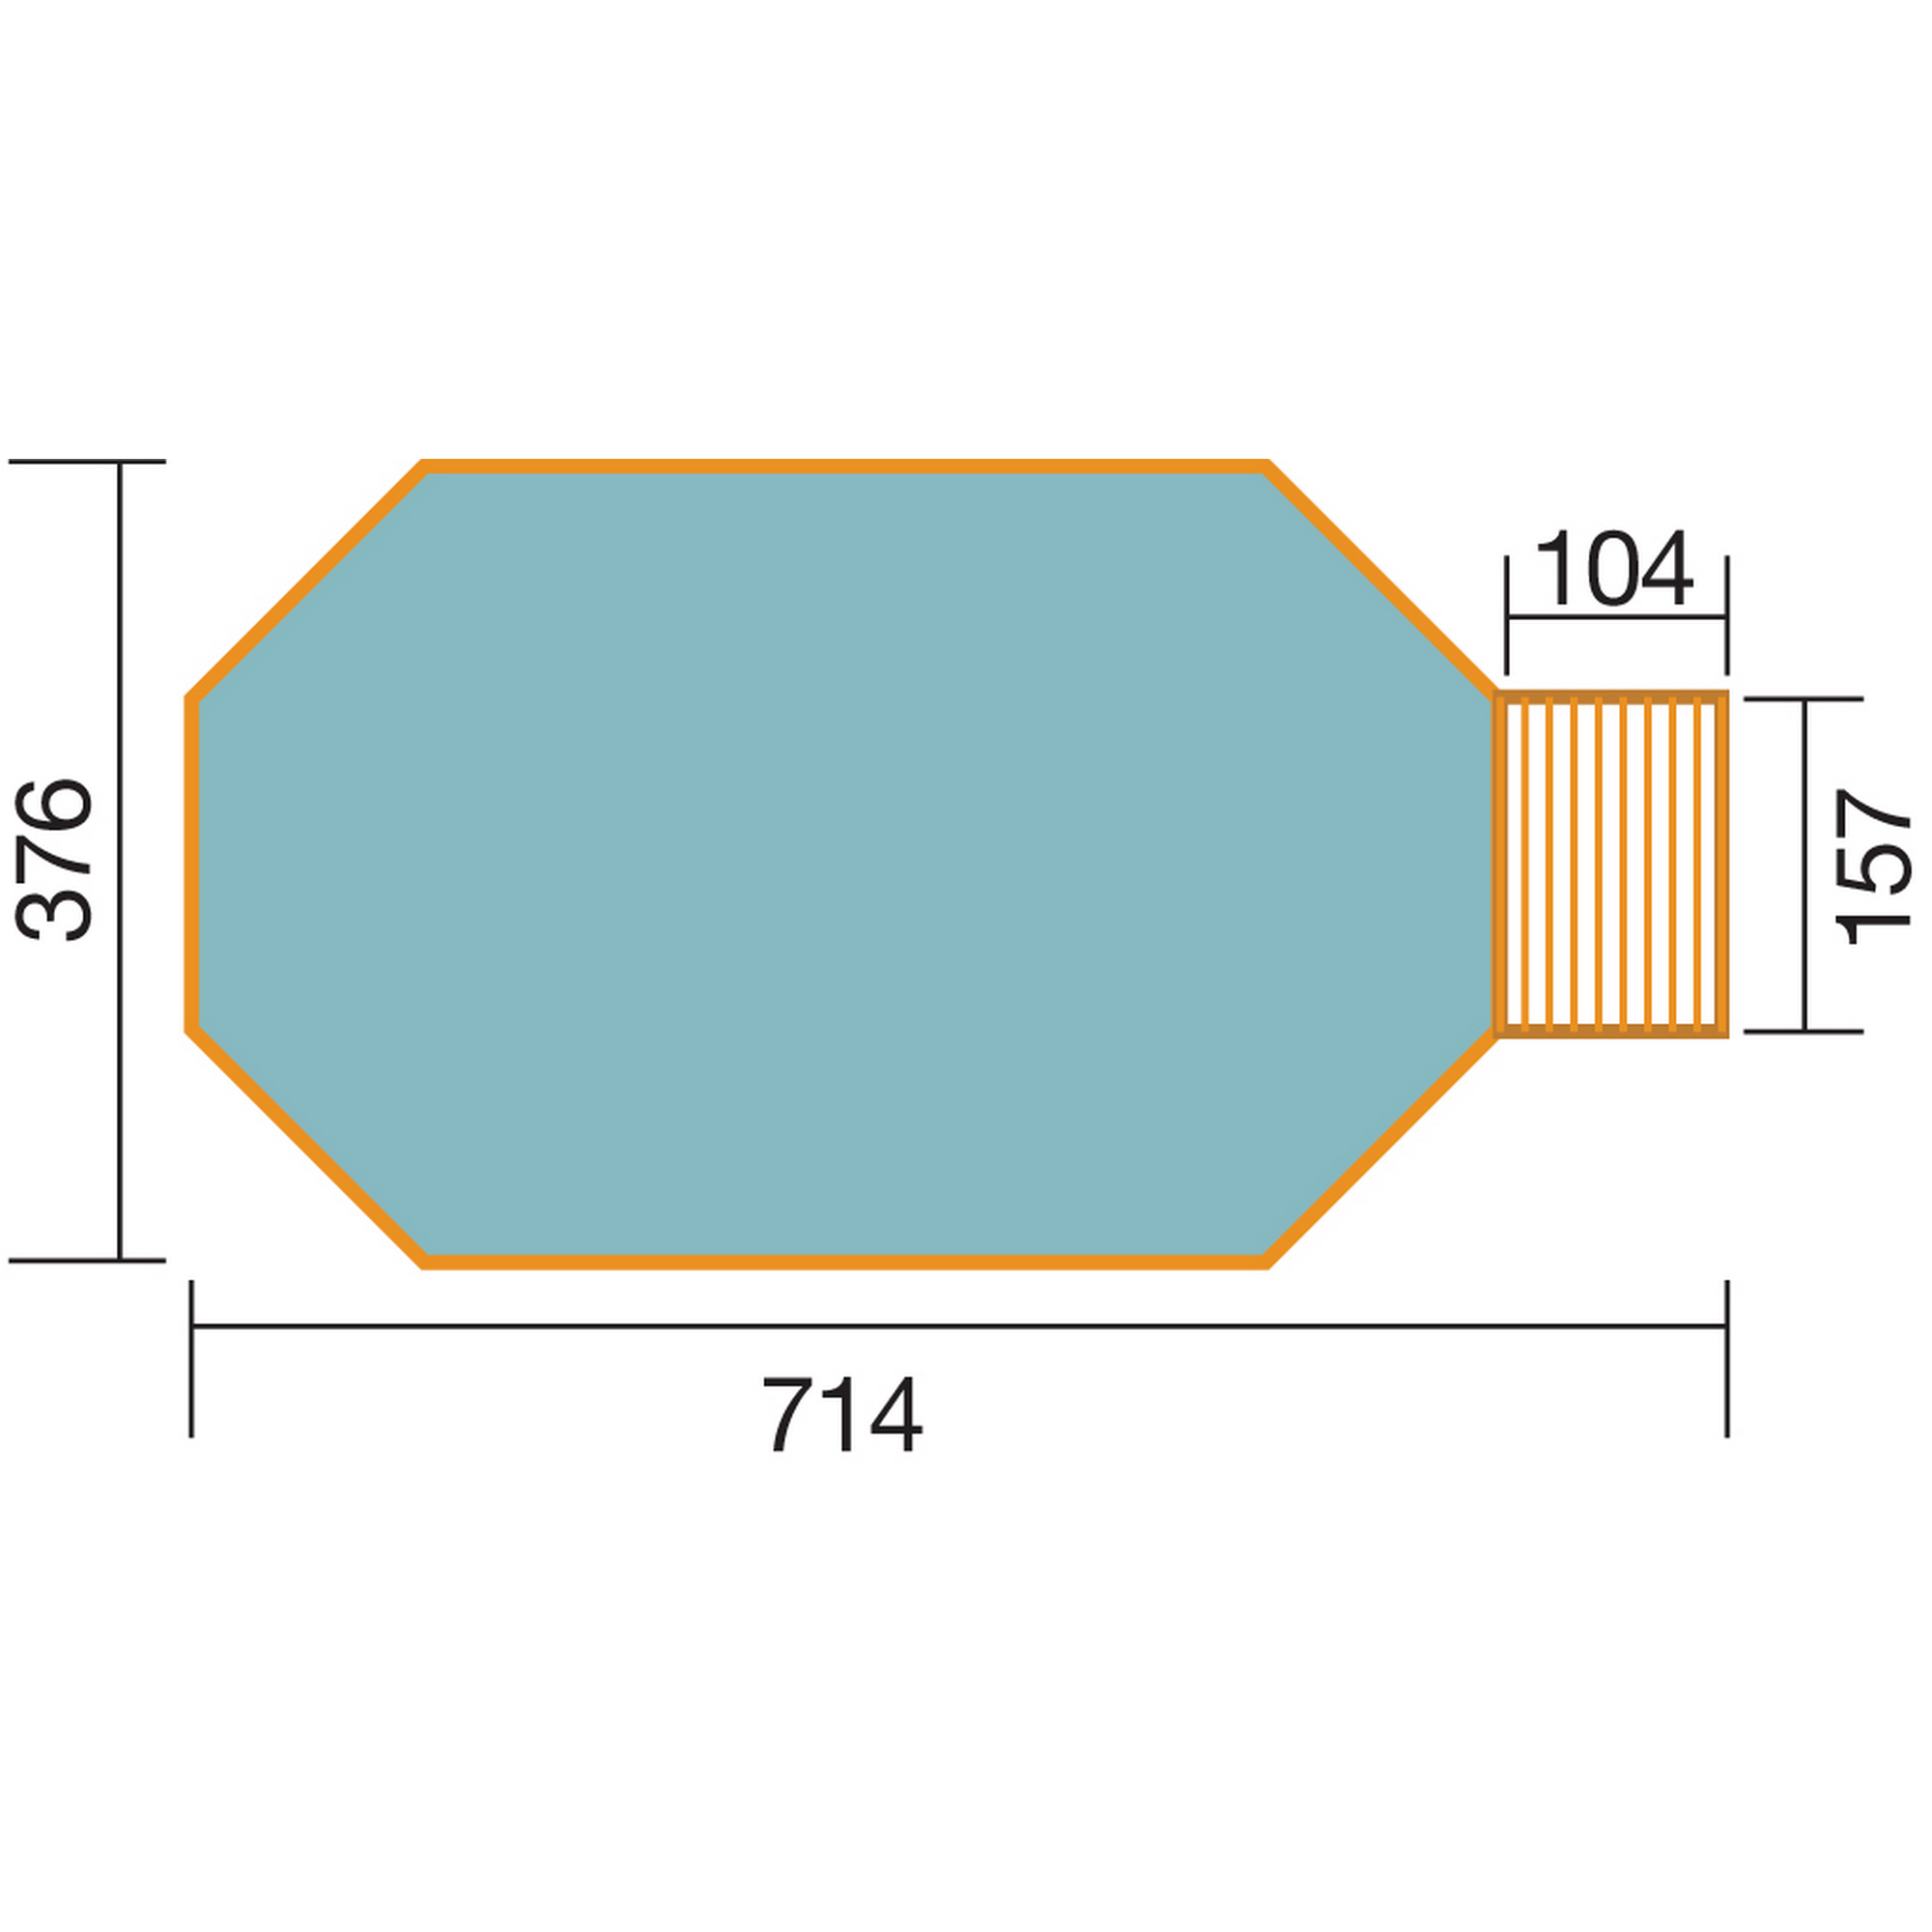 Massivholz-Pool '594' achteckig, 714 x 376 x 116 cm + product picture